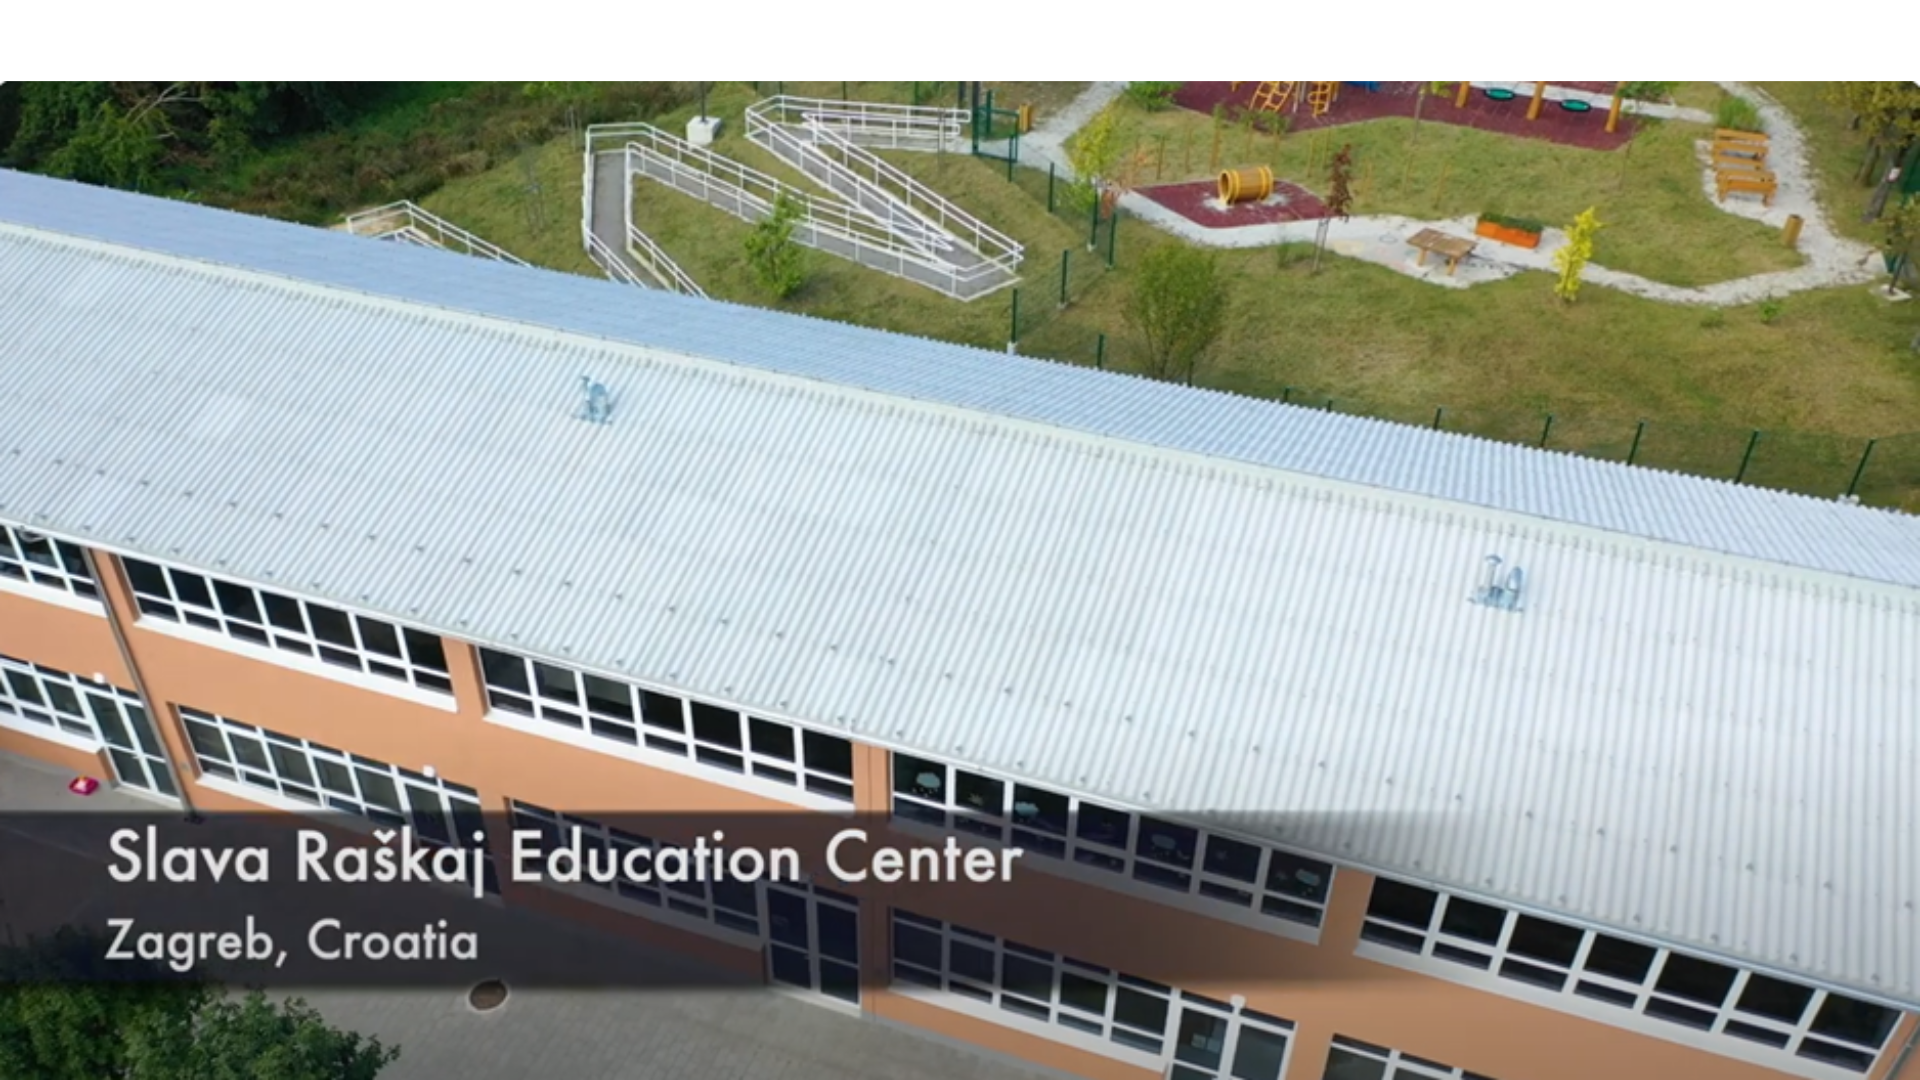 Obnovom povijesne zagrebačke škole do čak 84% uštede energije za grijanje i zdravijeg prostora za učenike i učitelje